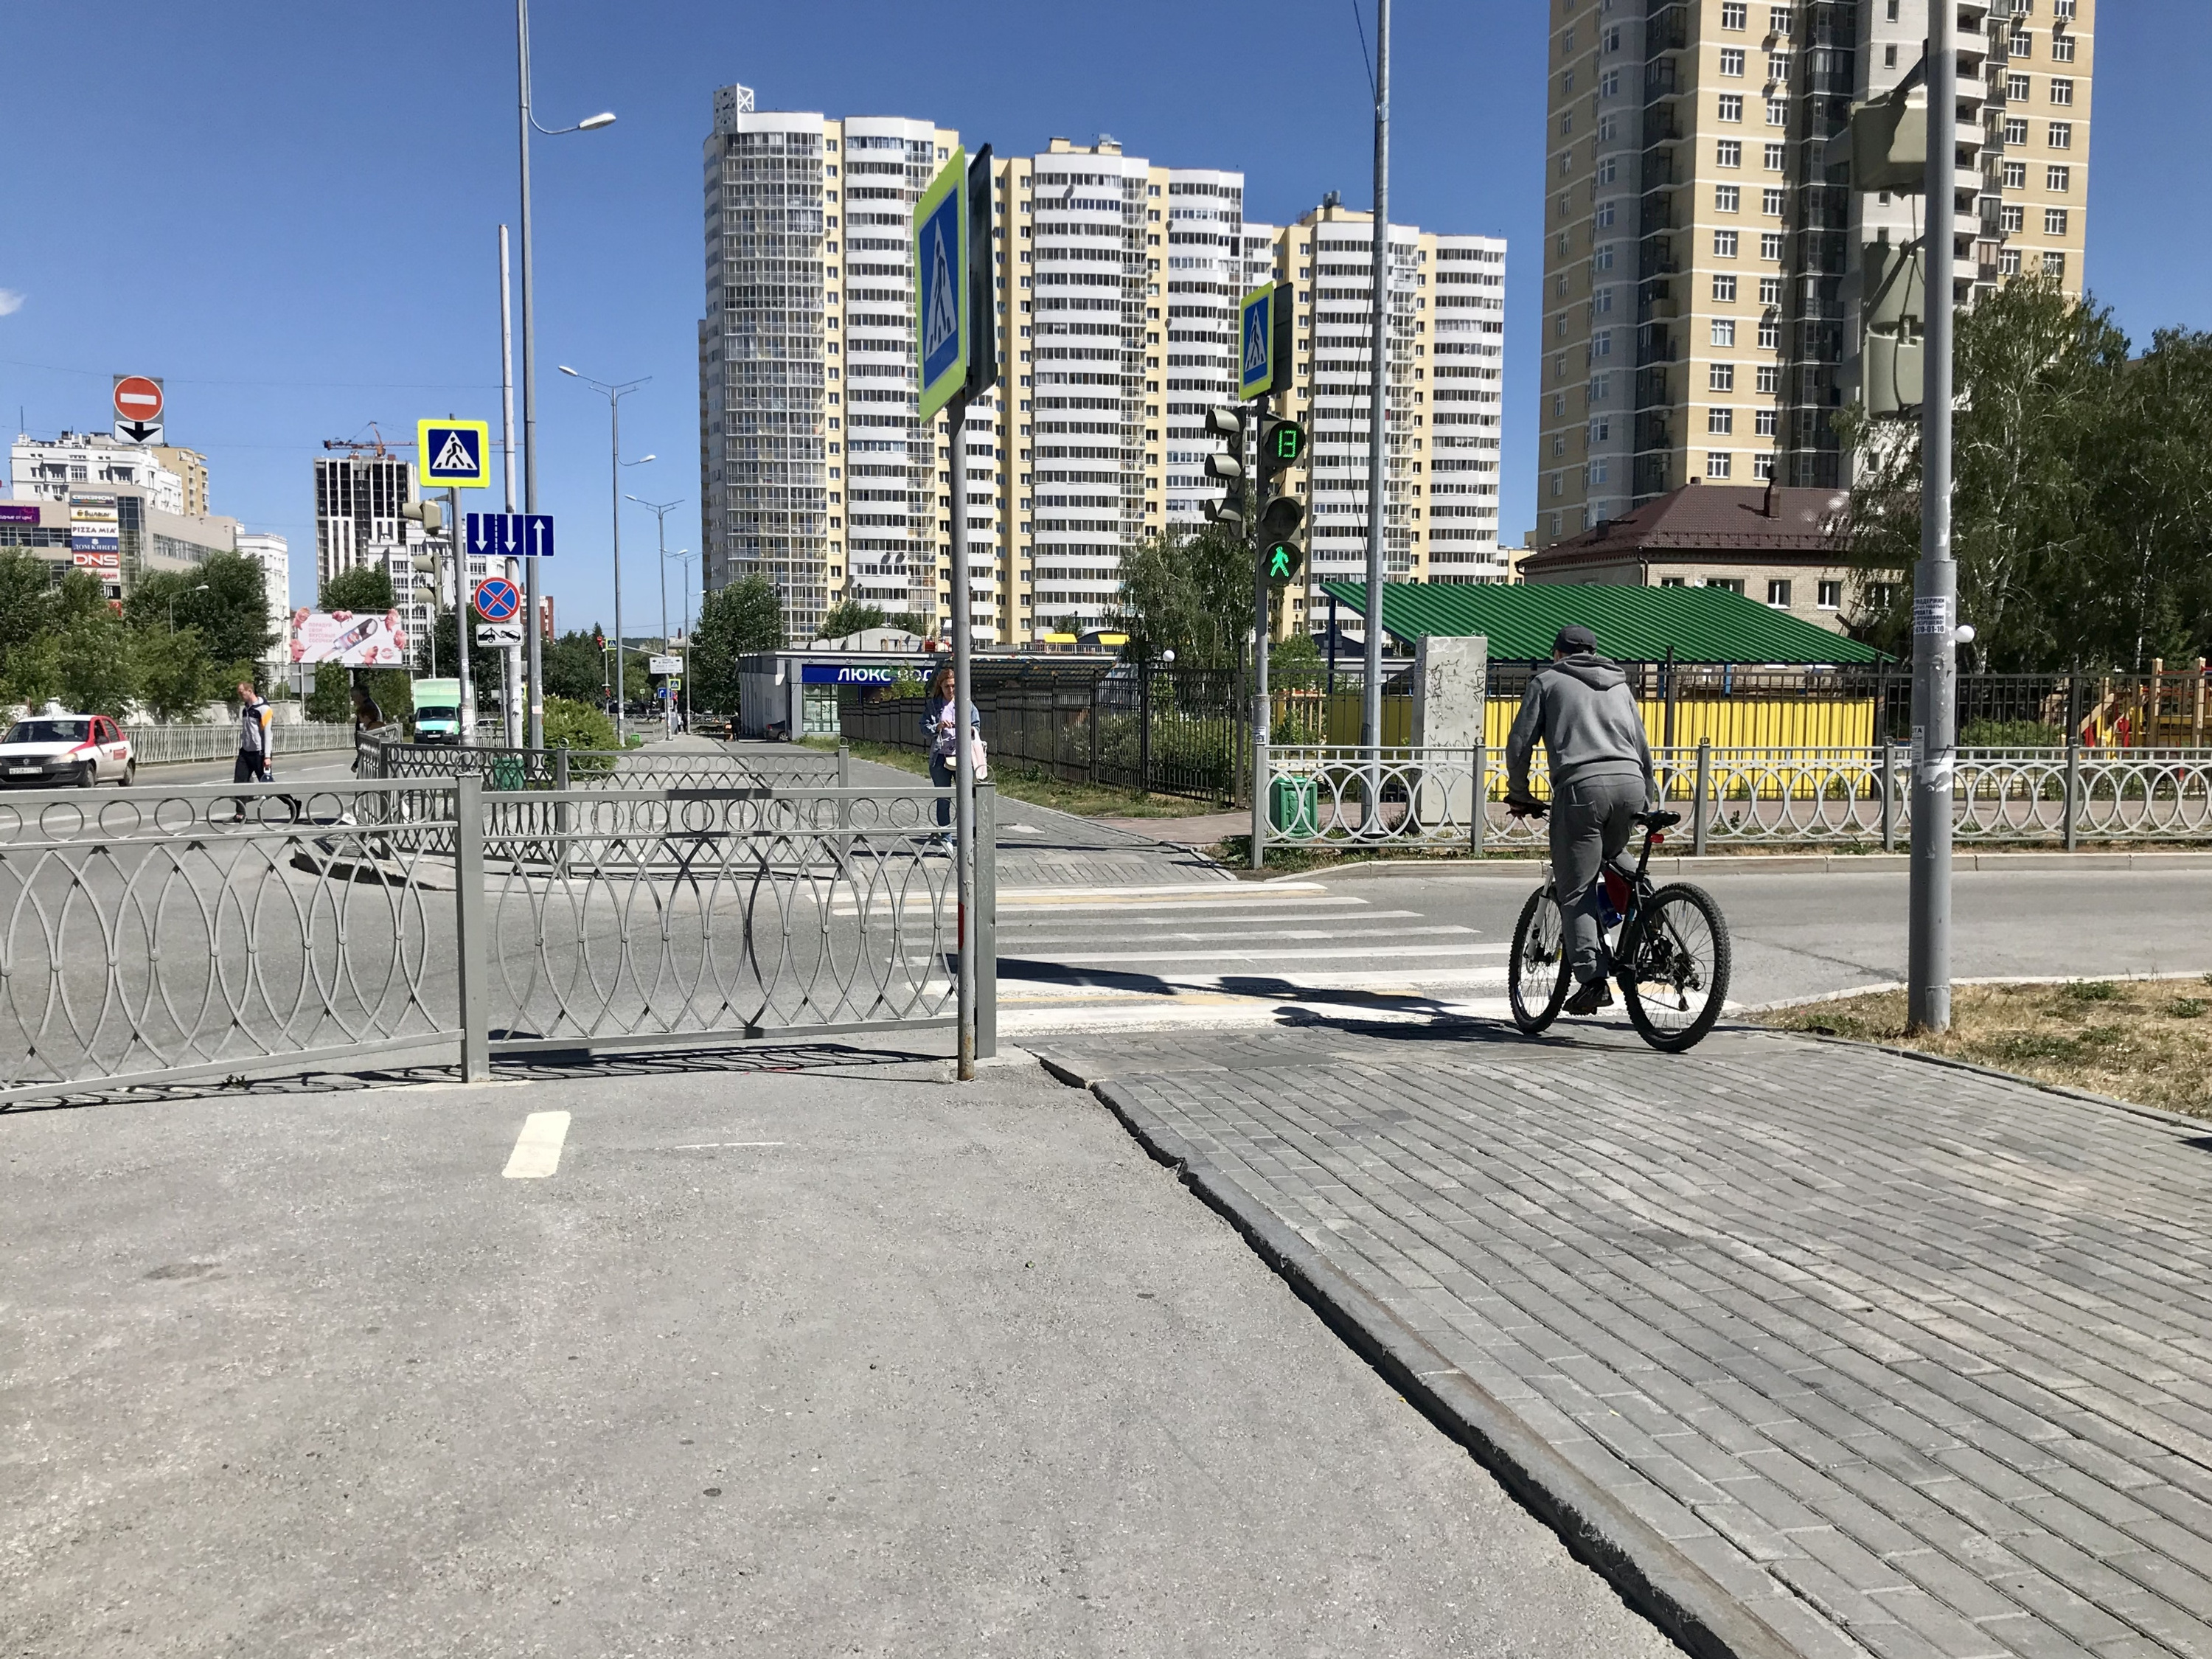 Велодорожка перекрыта забором. Поэтому велосипедист вынужден двигаться по тротуару